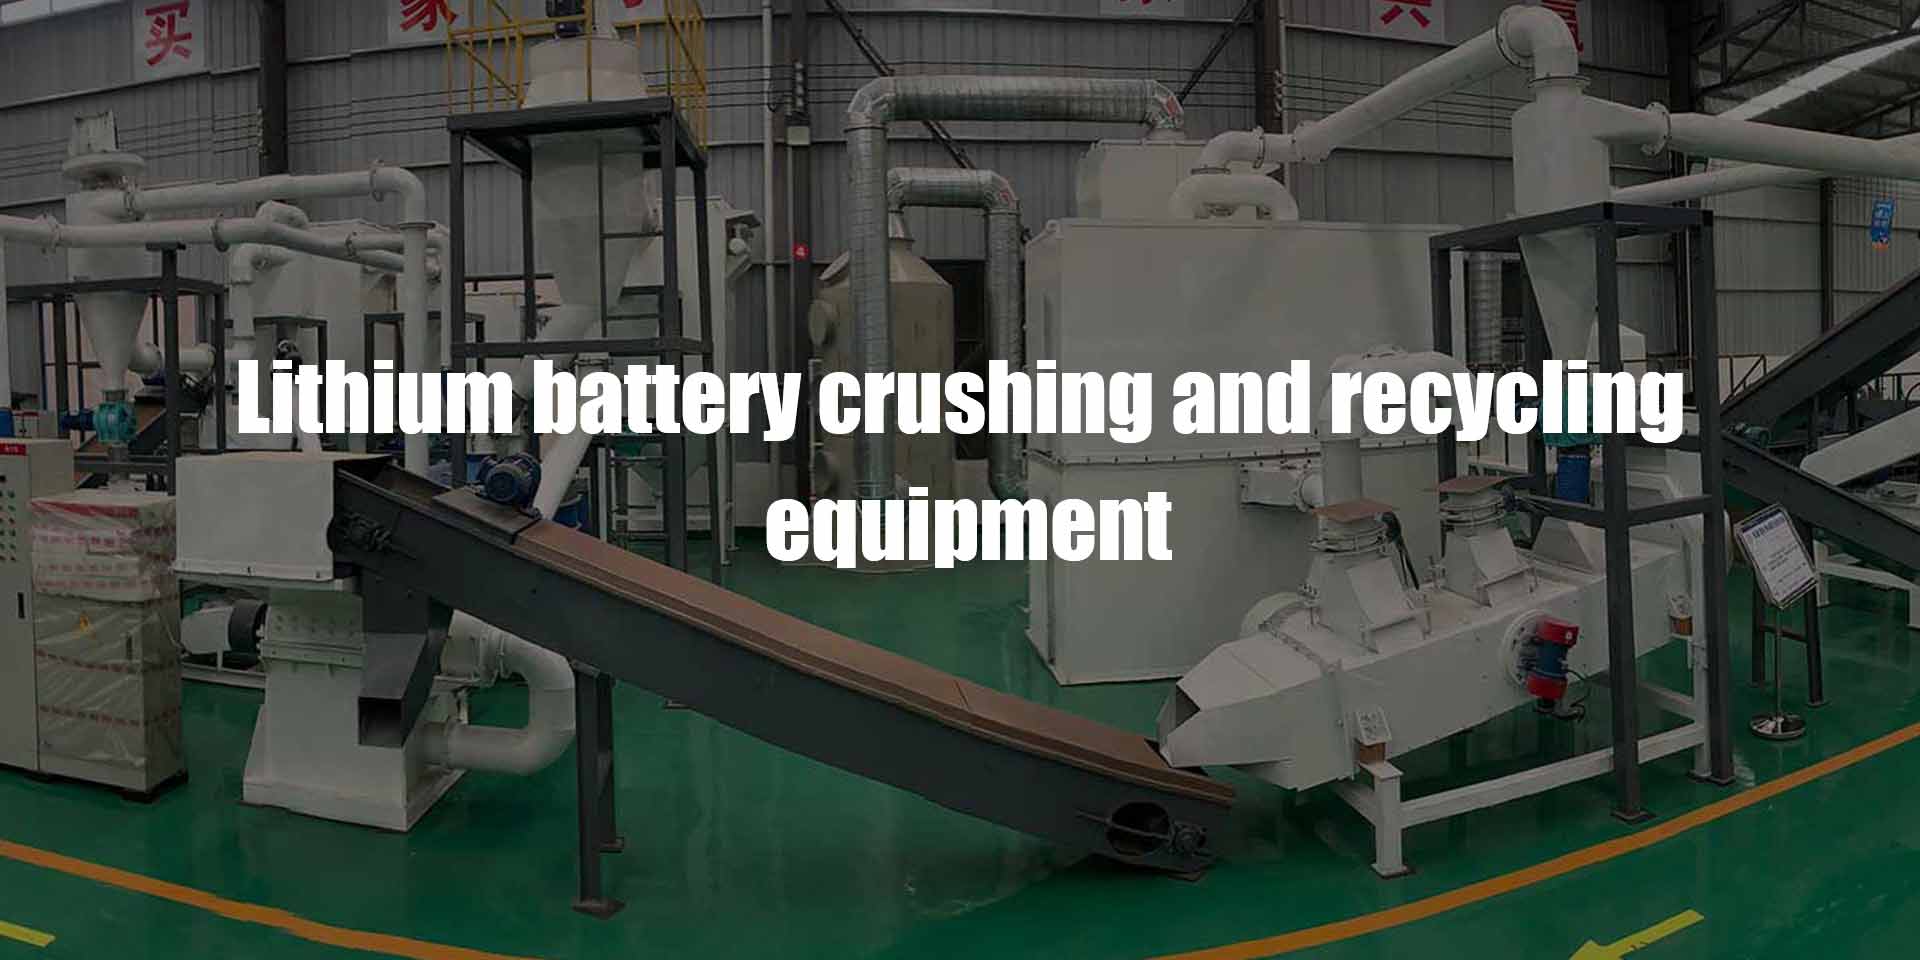 Производственная линия оборудования для переработки литиевых батарей